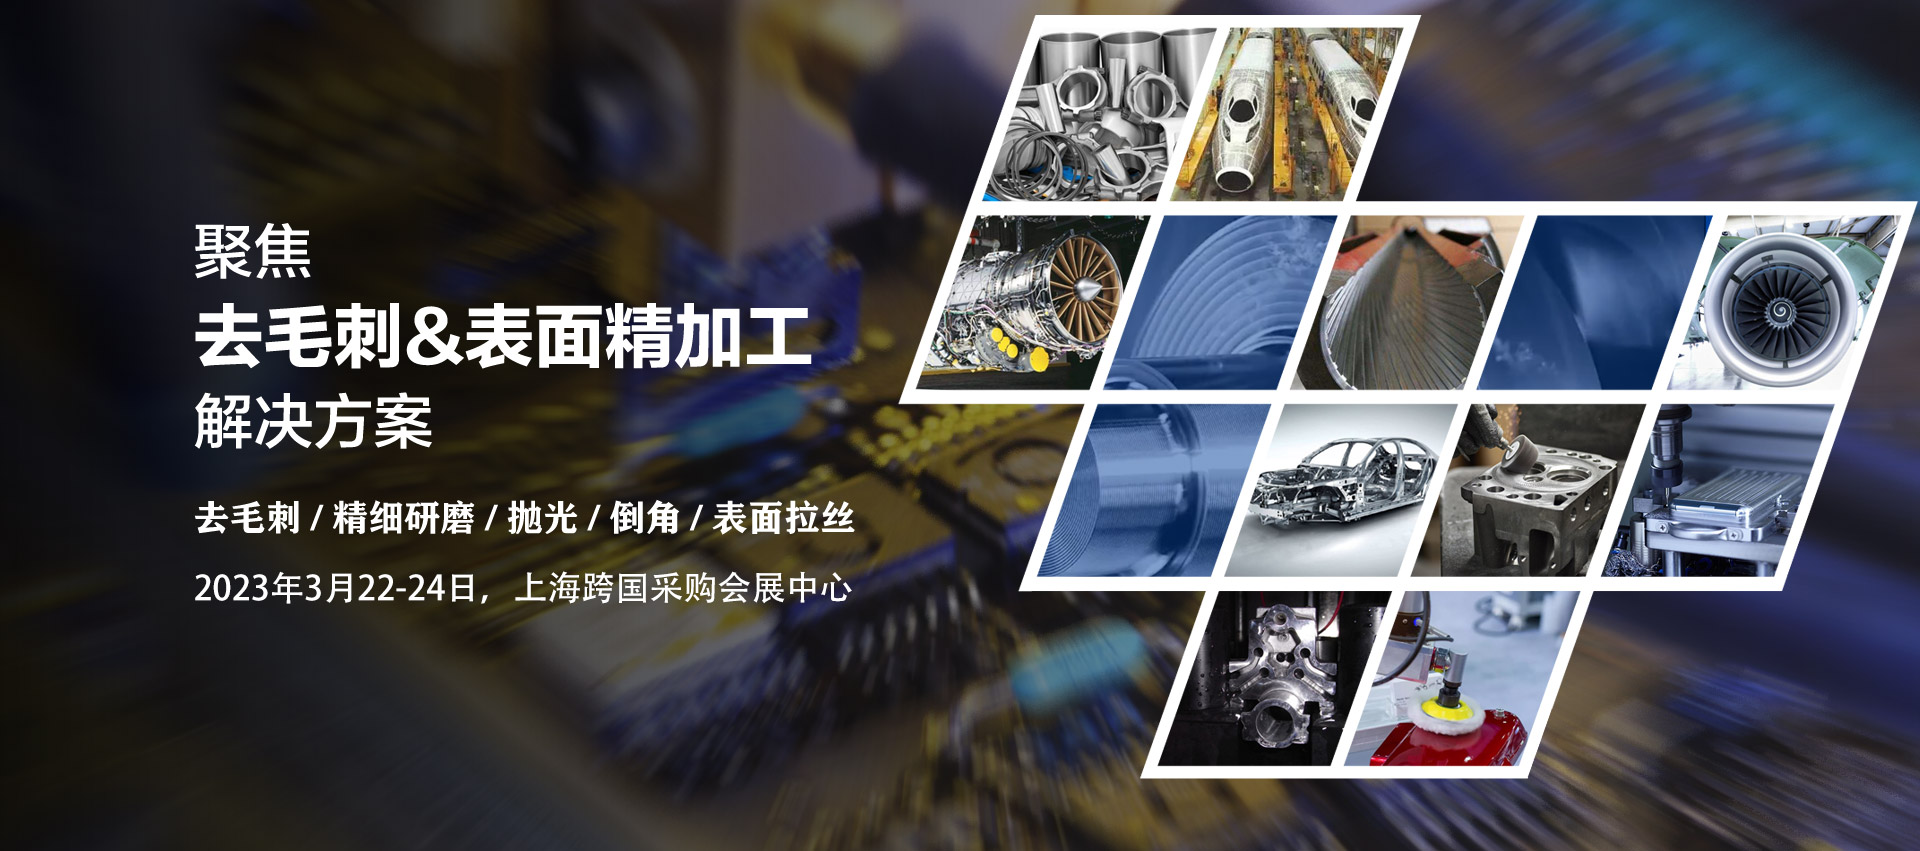 2023 上海国际去毛刺&表面精加工技术展览会